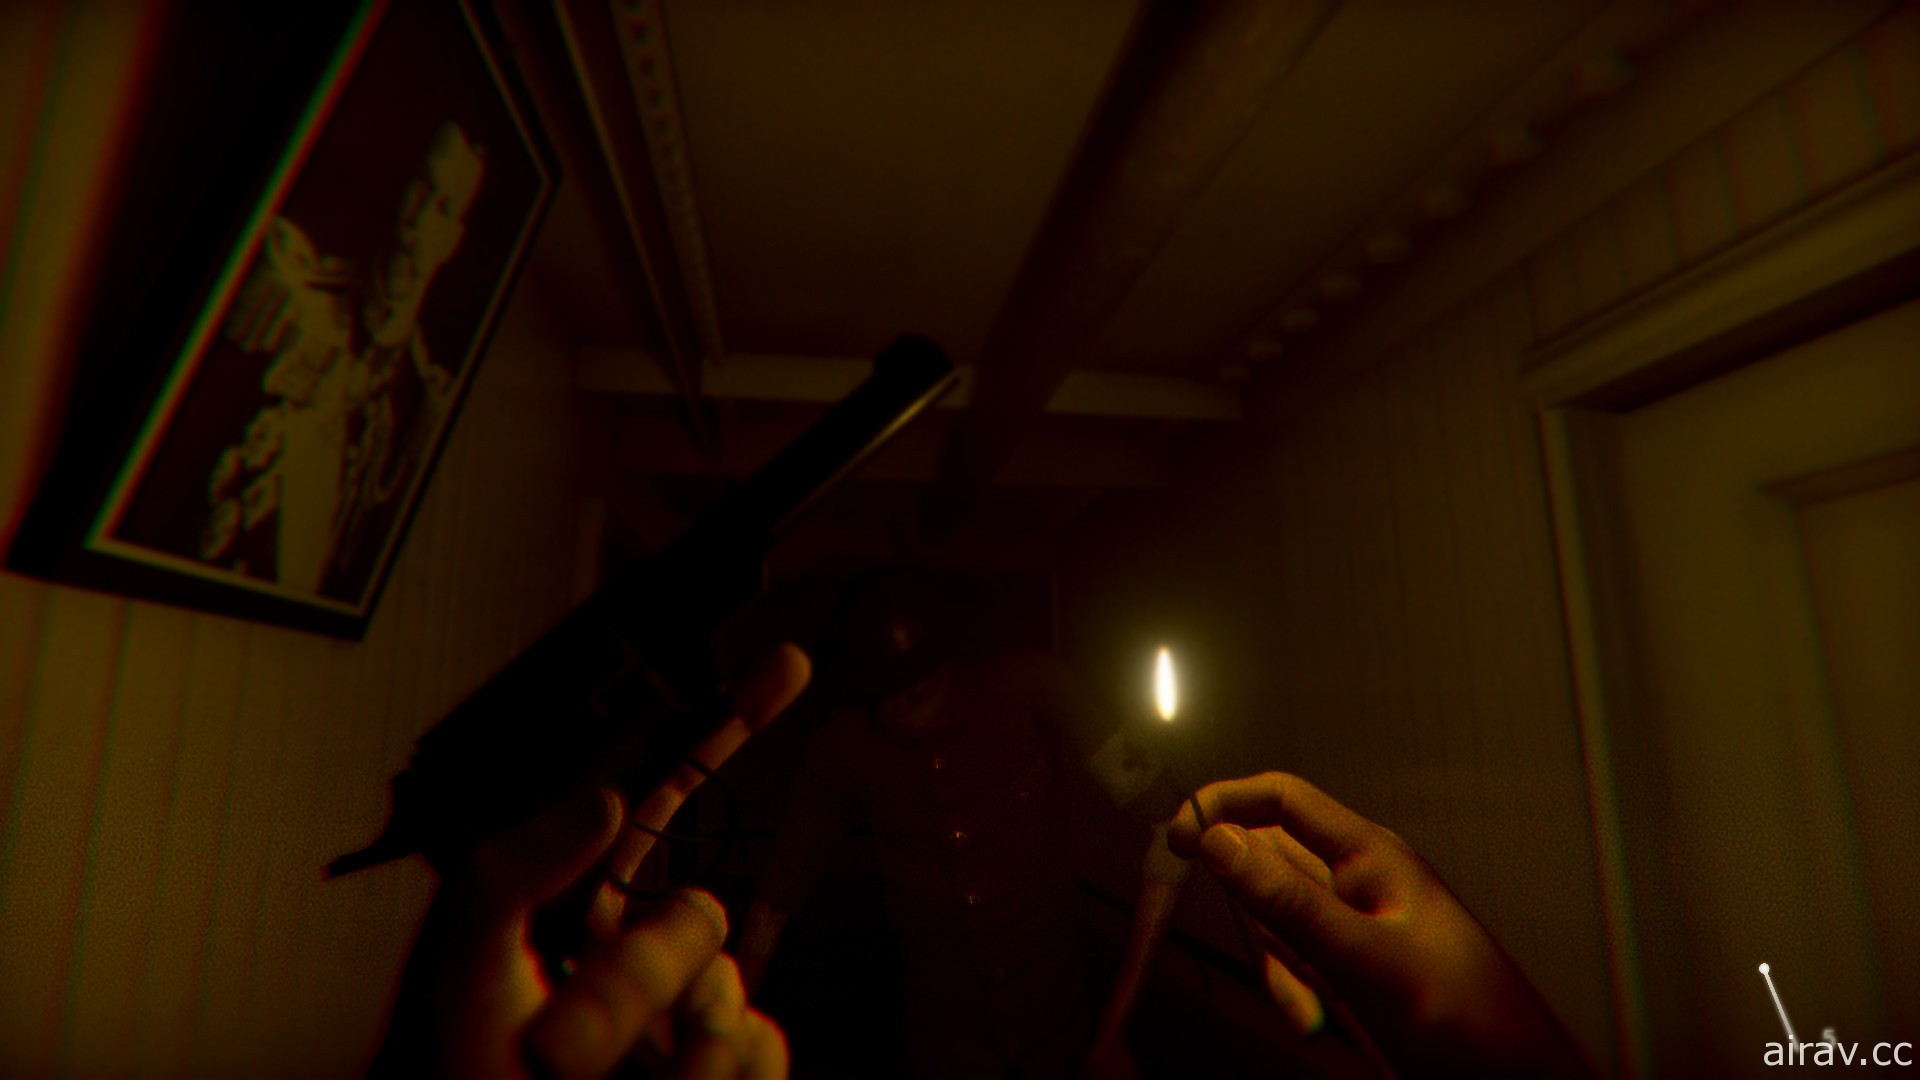 獨立遊戲開發第一人稱恐怖遊戲《沉沒郵輪 Under》10 月底發售 釋出新宣傳影片